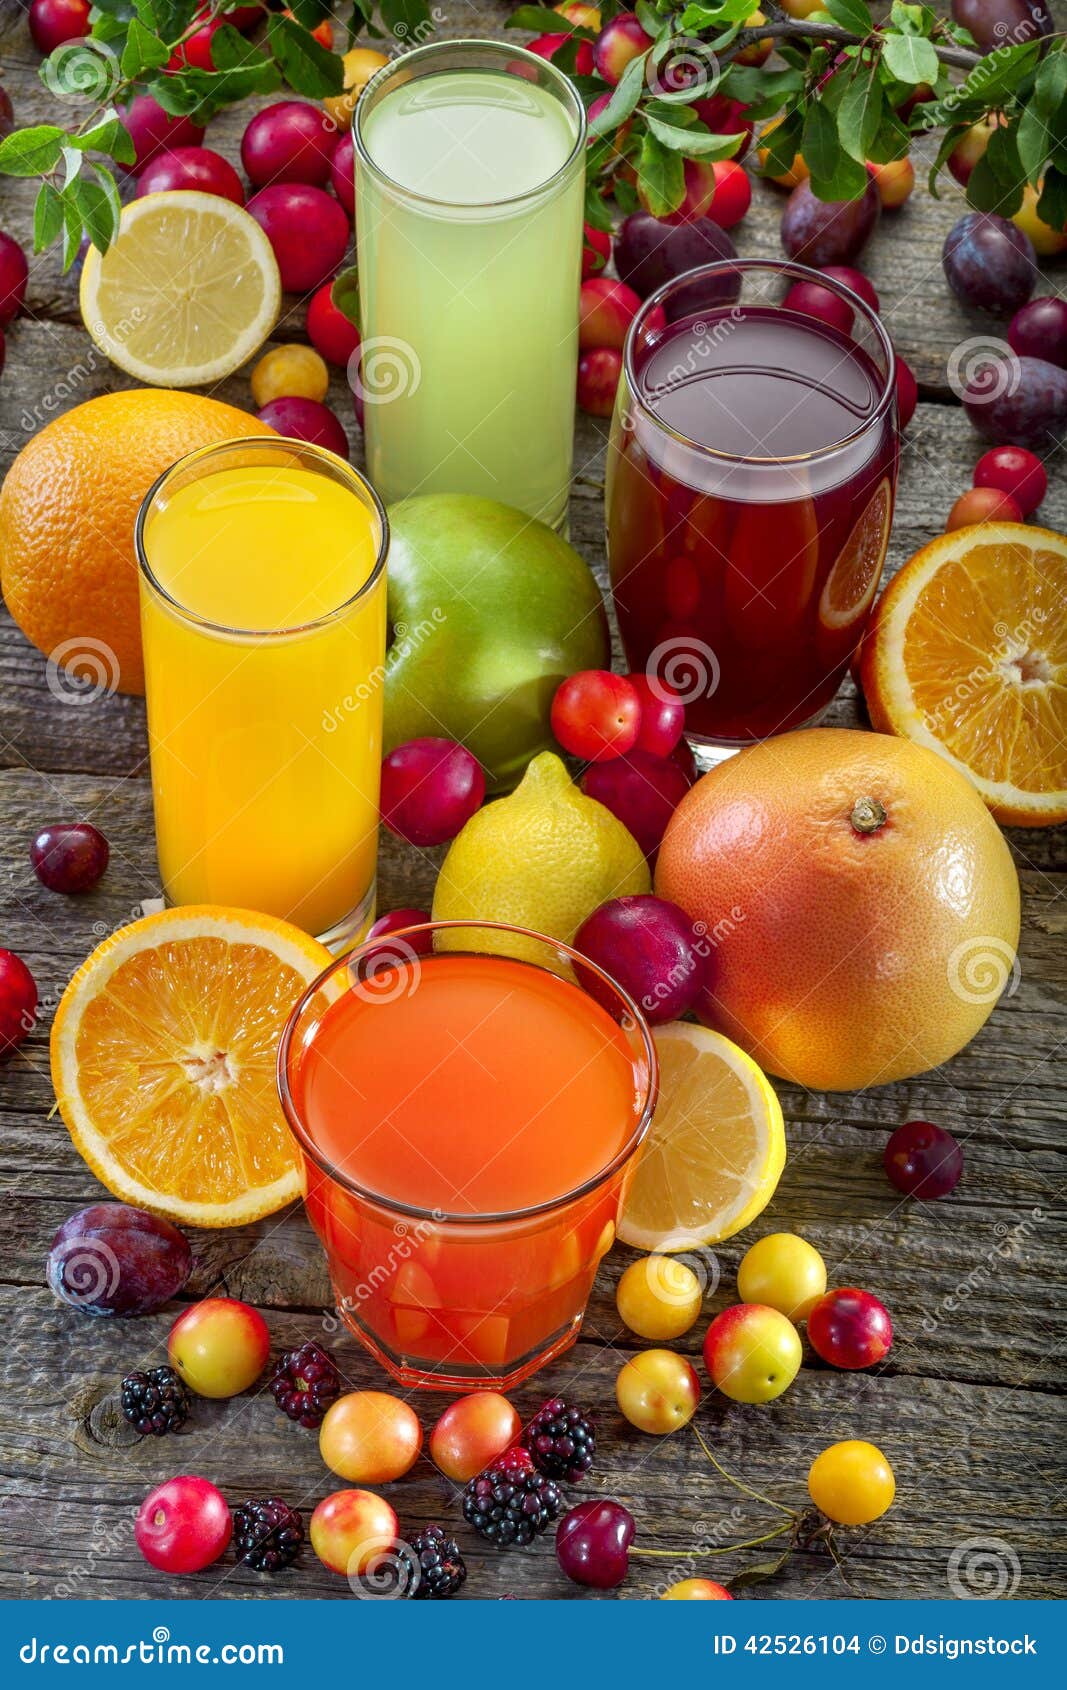 Antioxidant juices stock photo. Image of lemon, grapefruit - 42526104